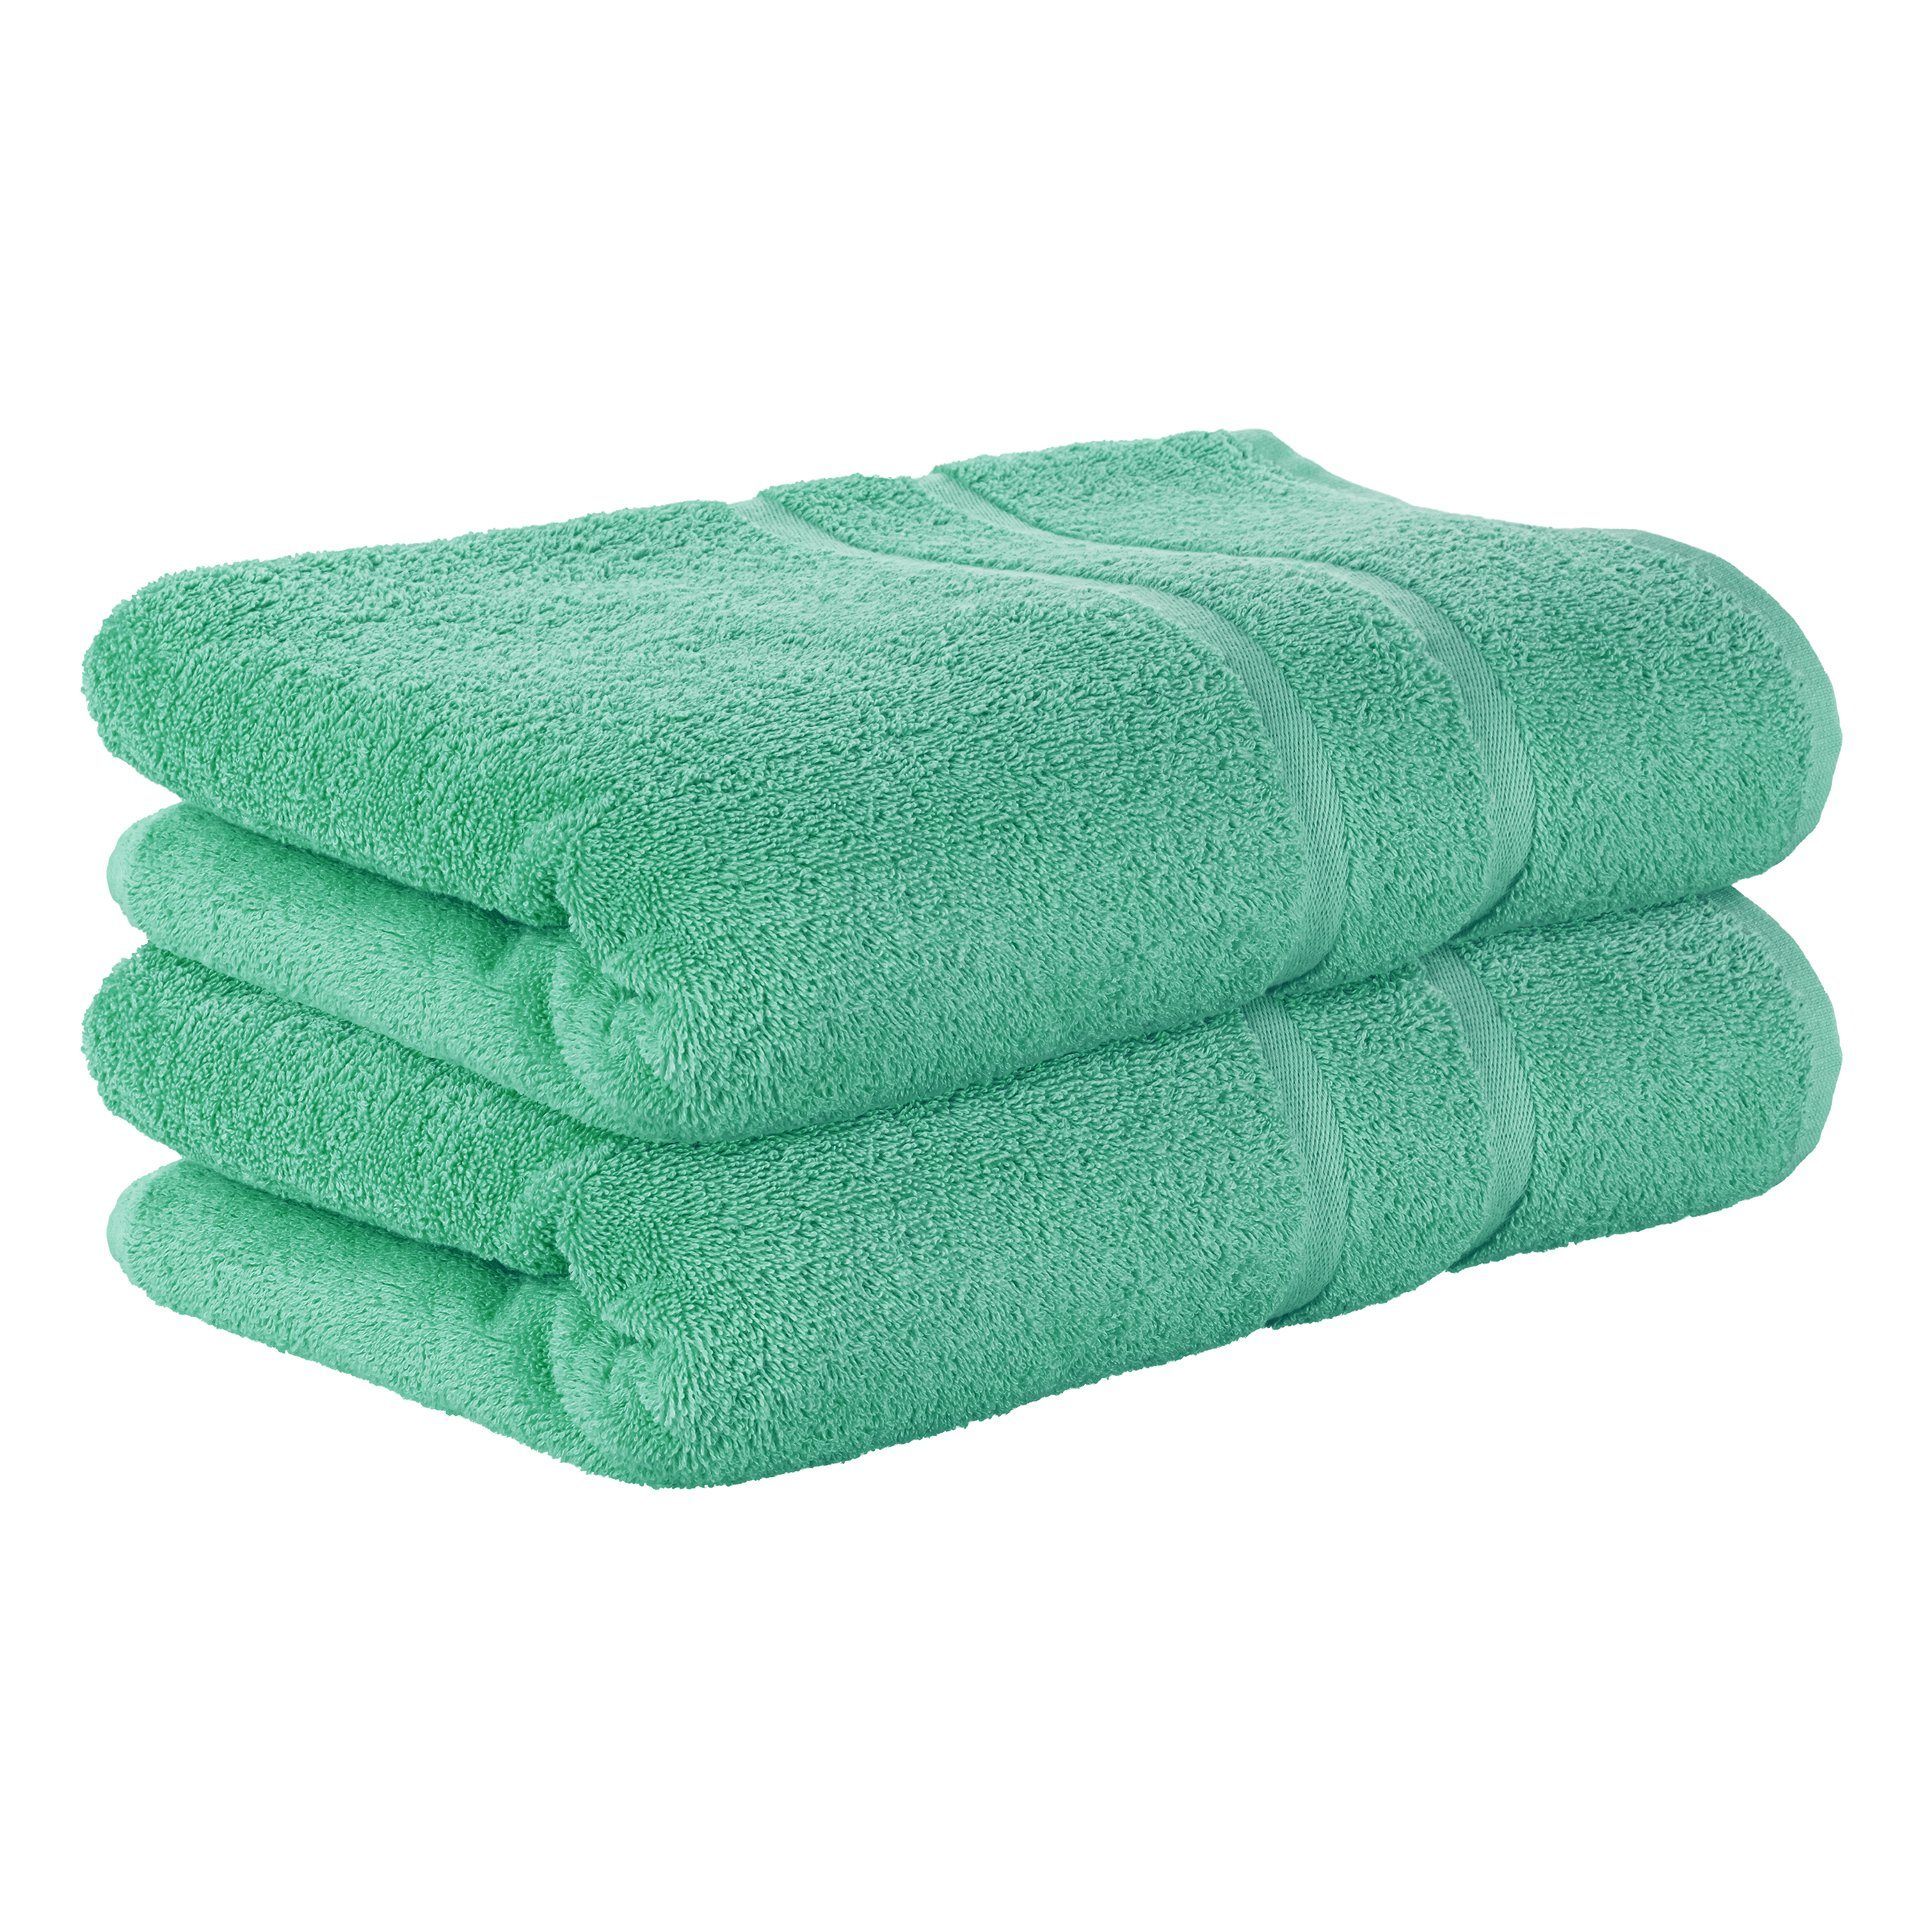 StickandShine Handtuch 2er Set Premium Frottee Handtuch 50x100 cm in 500g/m² aus 100% Baumwolle (2 Stück), 100% Baumwolle 500GSM Frottee Smaragdgrün